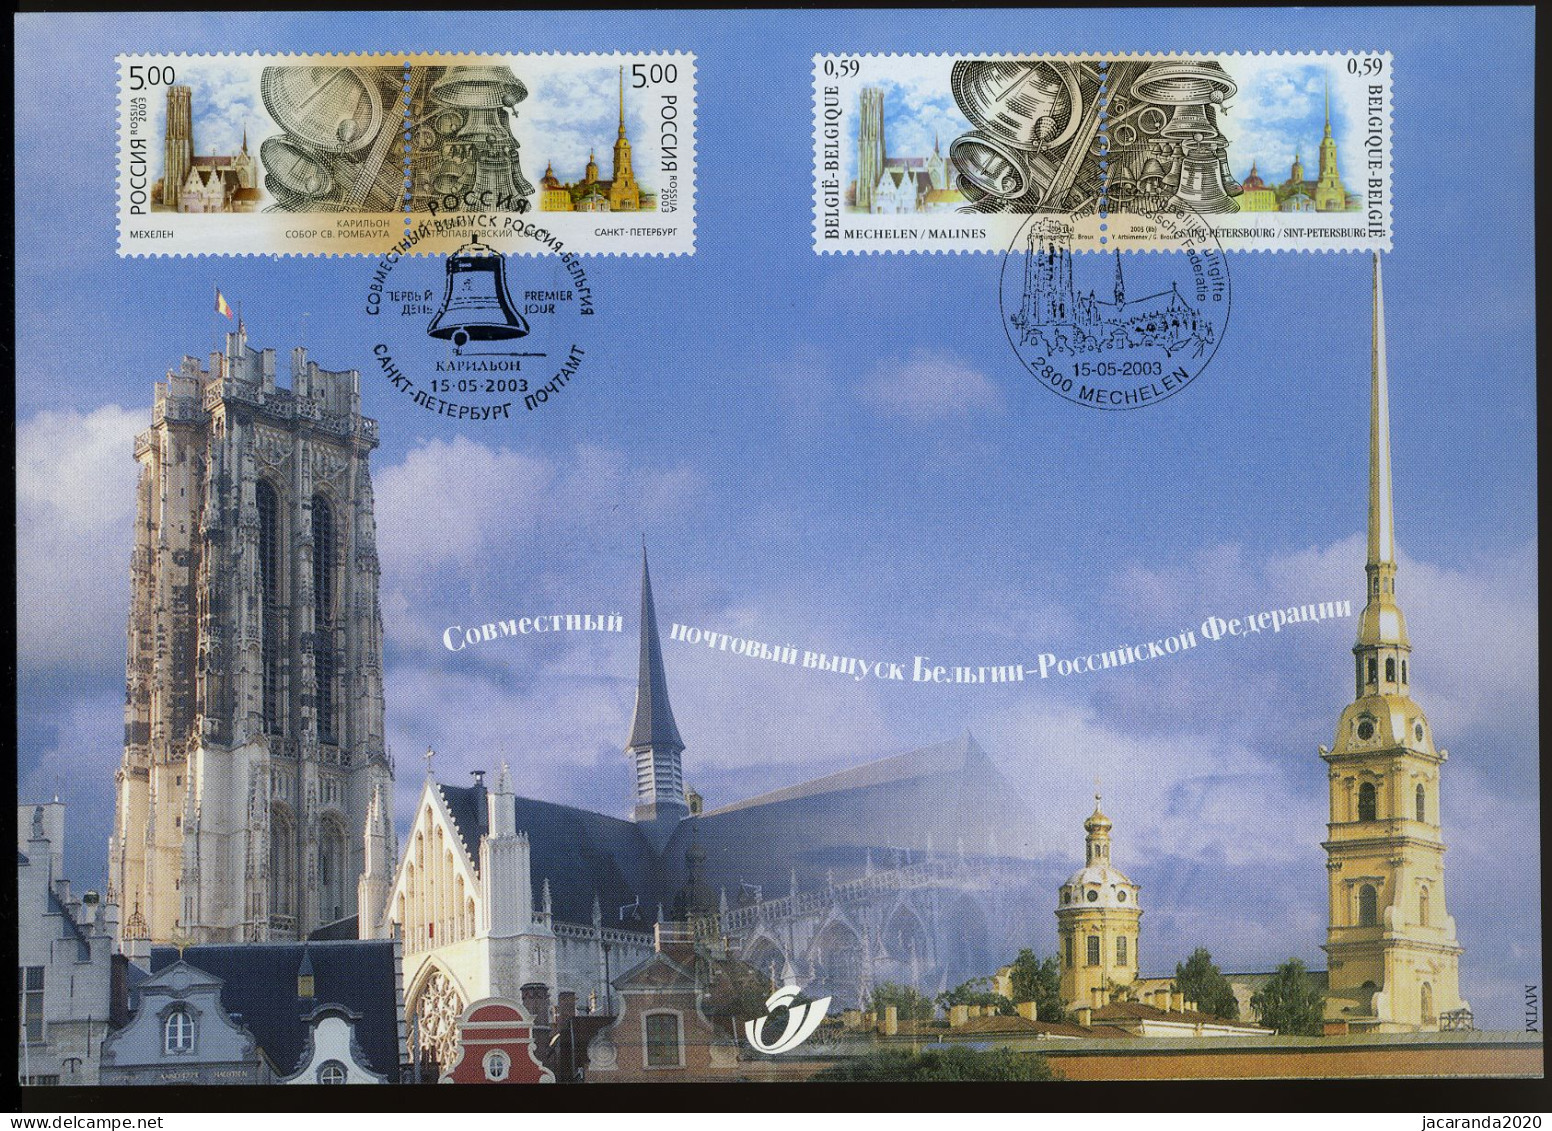 België 3170 HK - Klokken Van Mechelen - St.-Petersburg - Gem. Uitgifte Met De Russische Federatie - 2003 - Souvenir Cards - Joint Issues [HK]